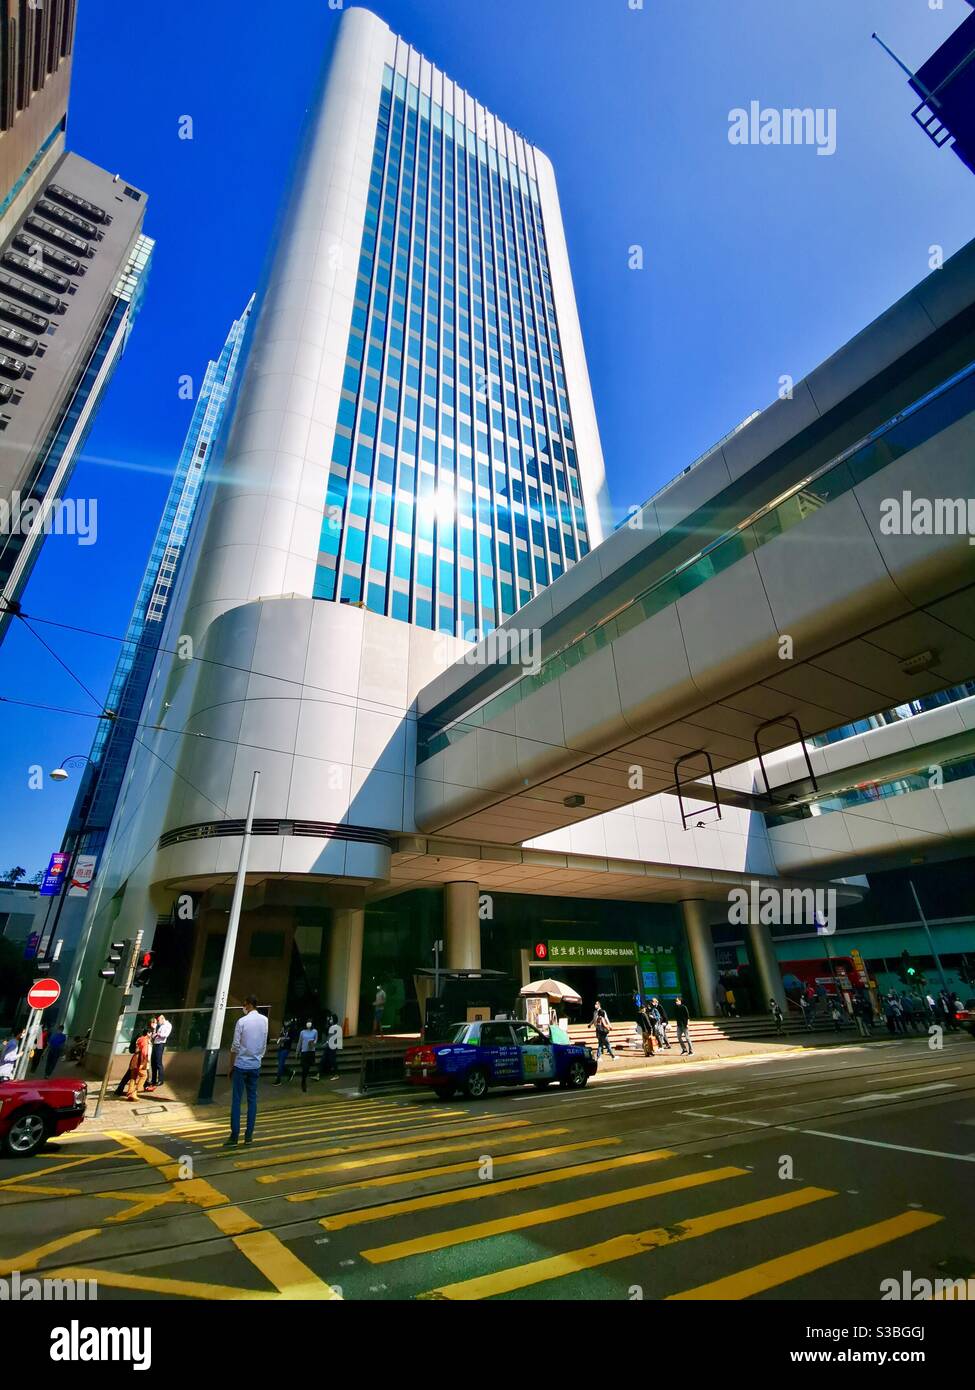 The Hang bank building in Hong kong Stock Photo -